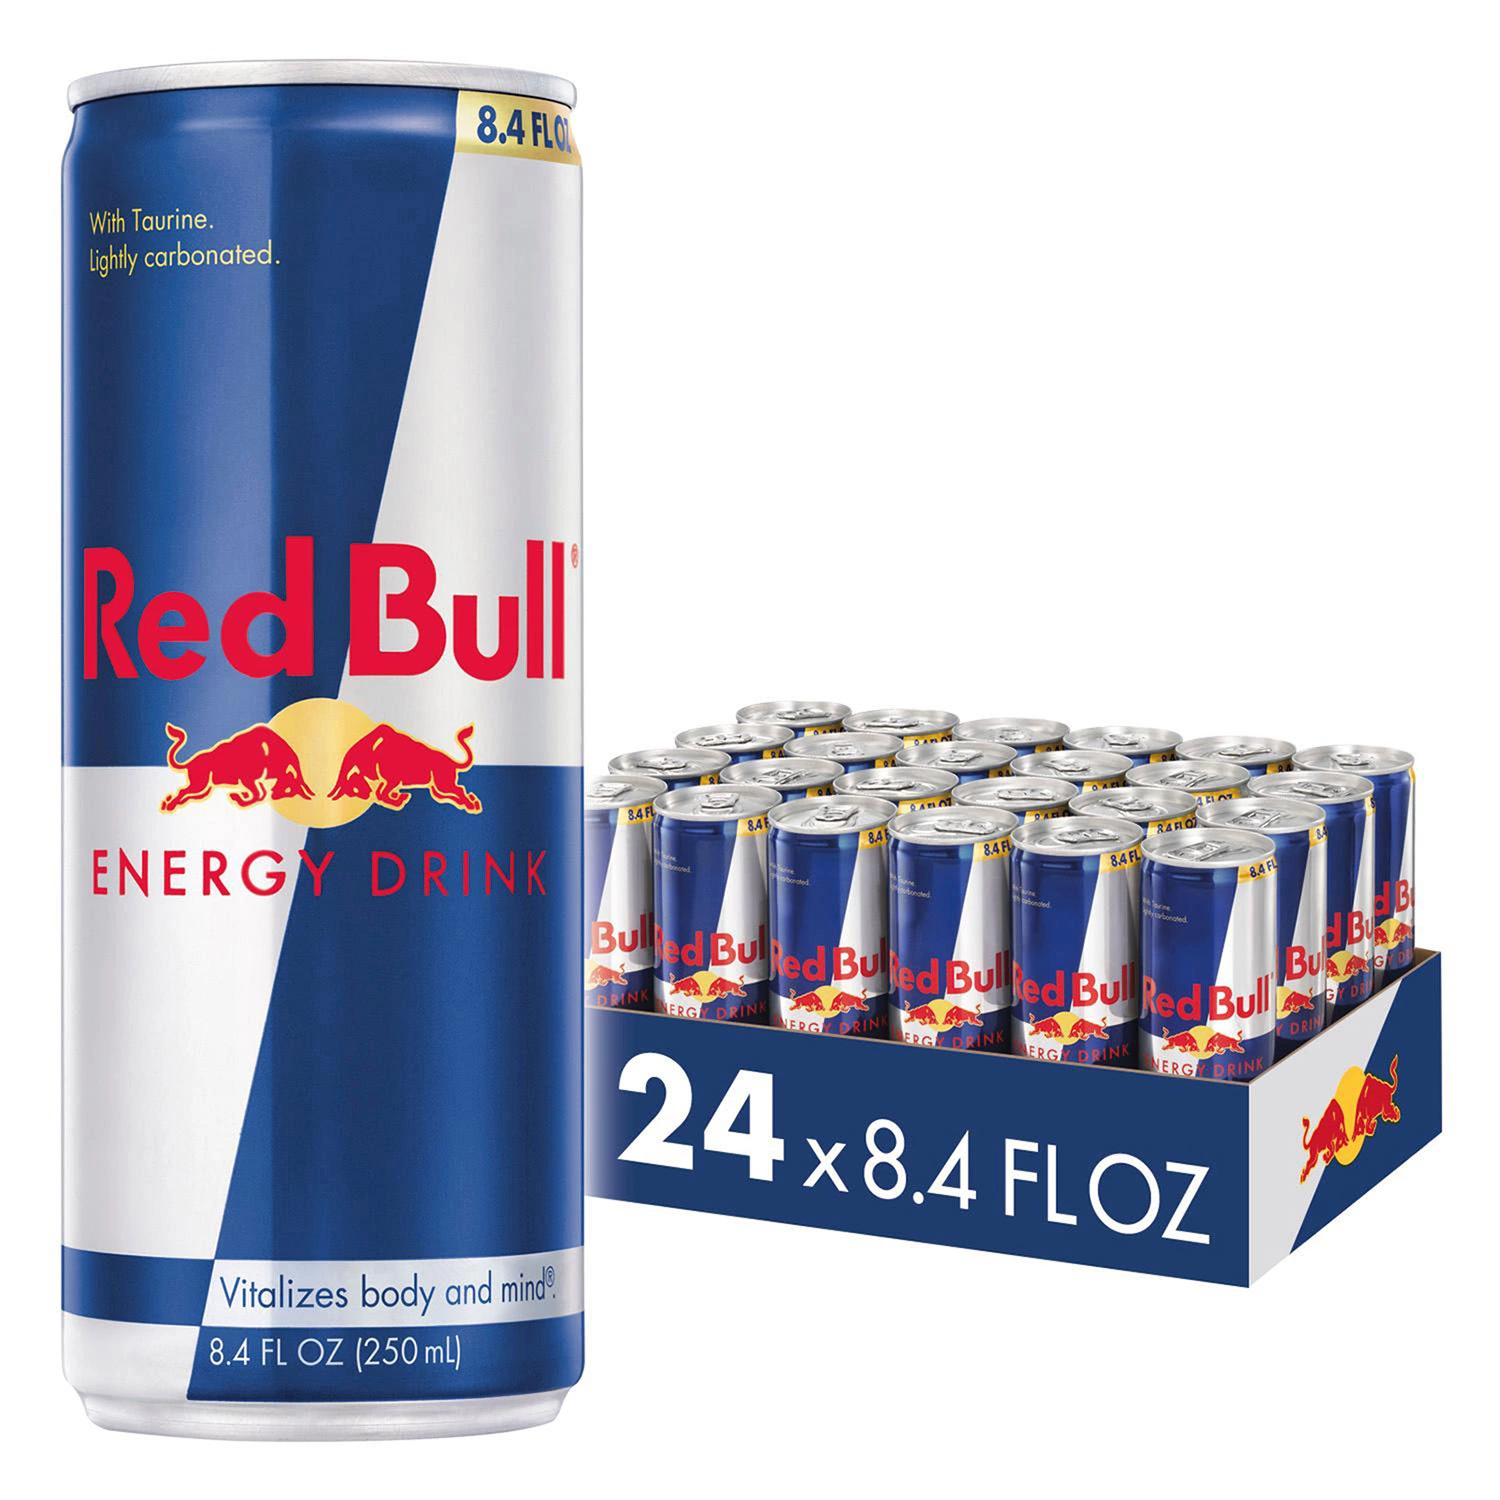 Red Bull Energ